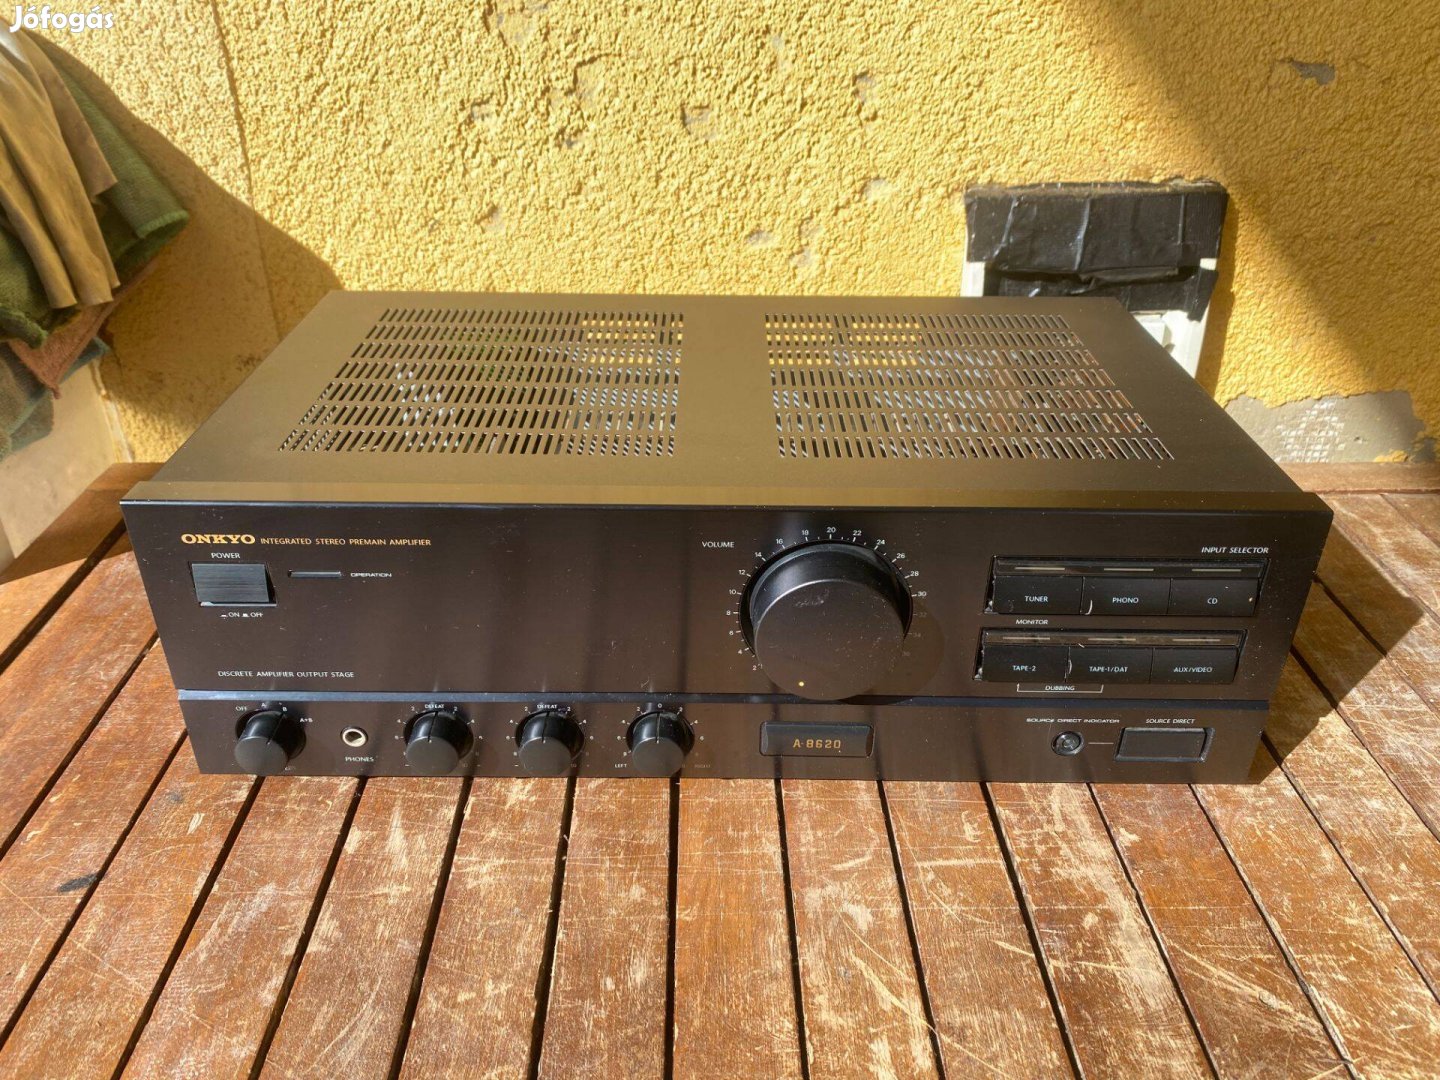 Onkyo A-8620 stereo erősítő